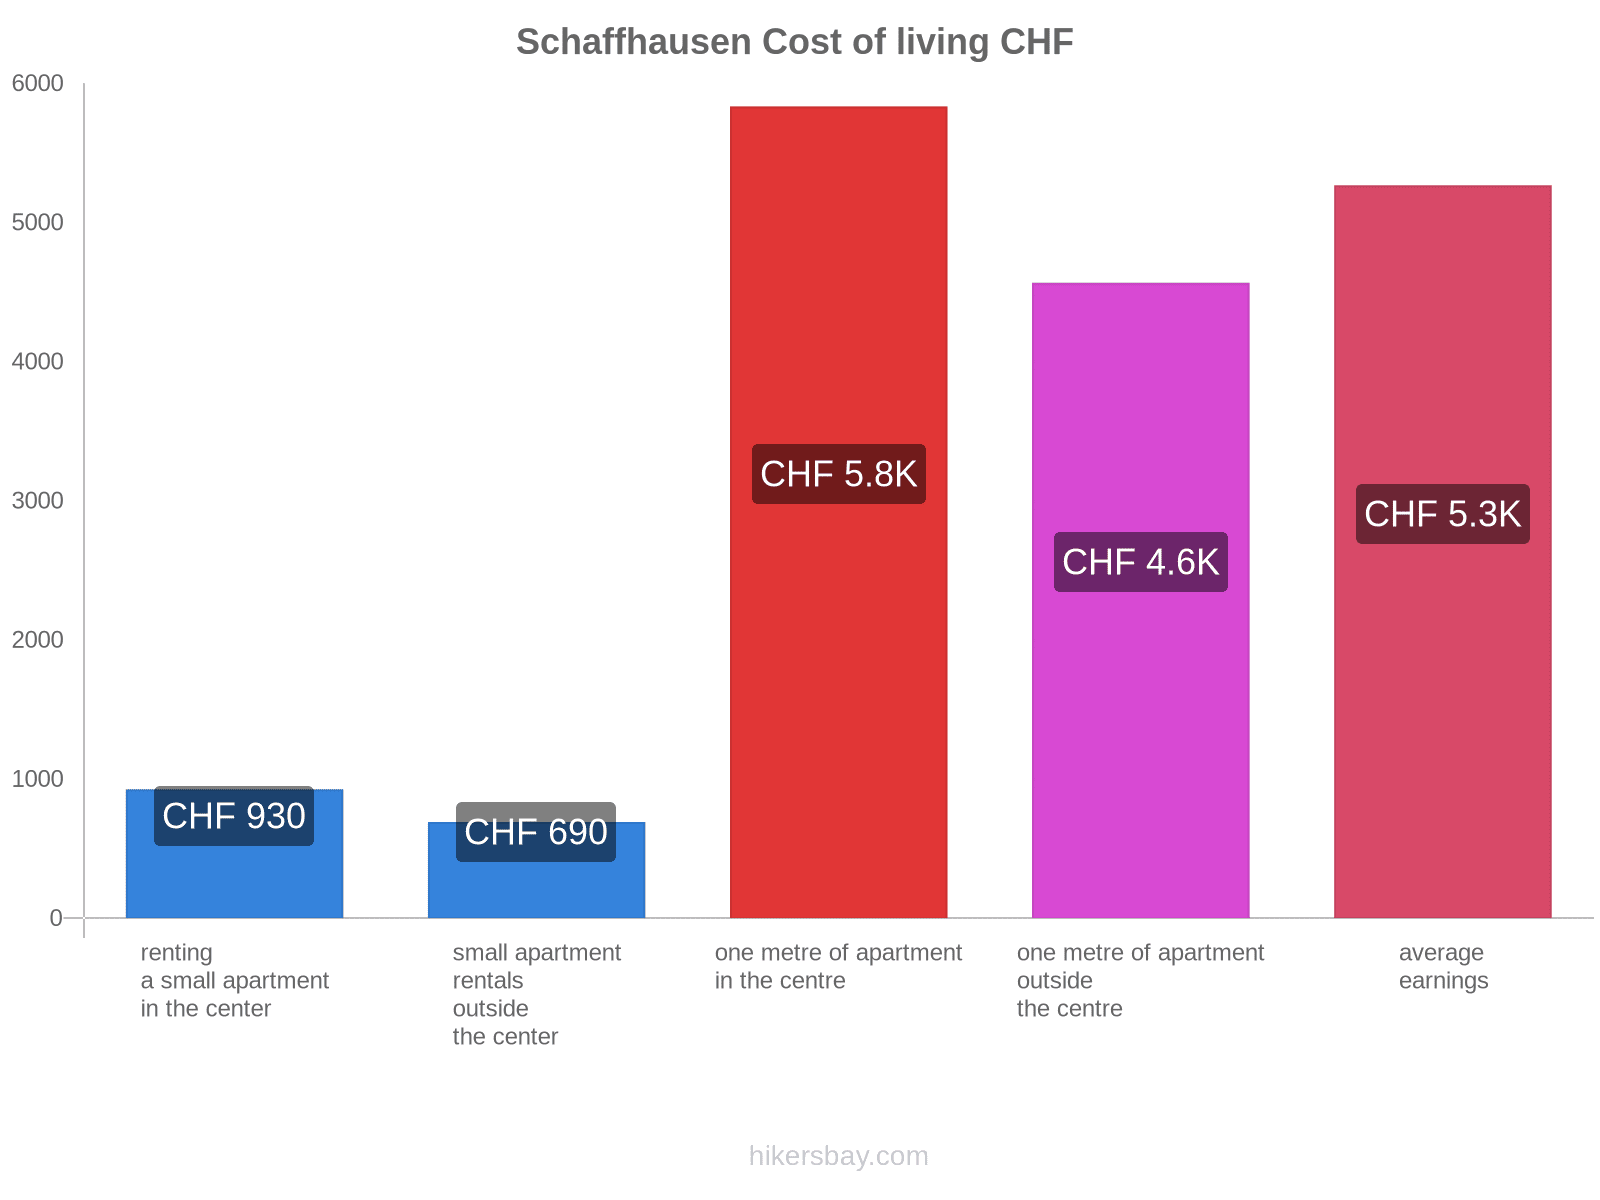 Schaffhausen cost of living hikersbay.com